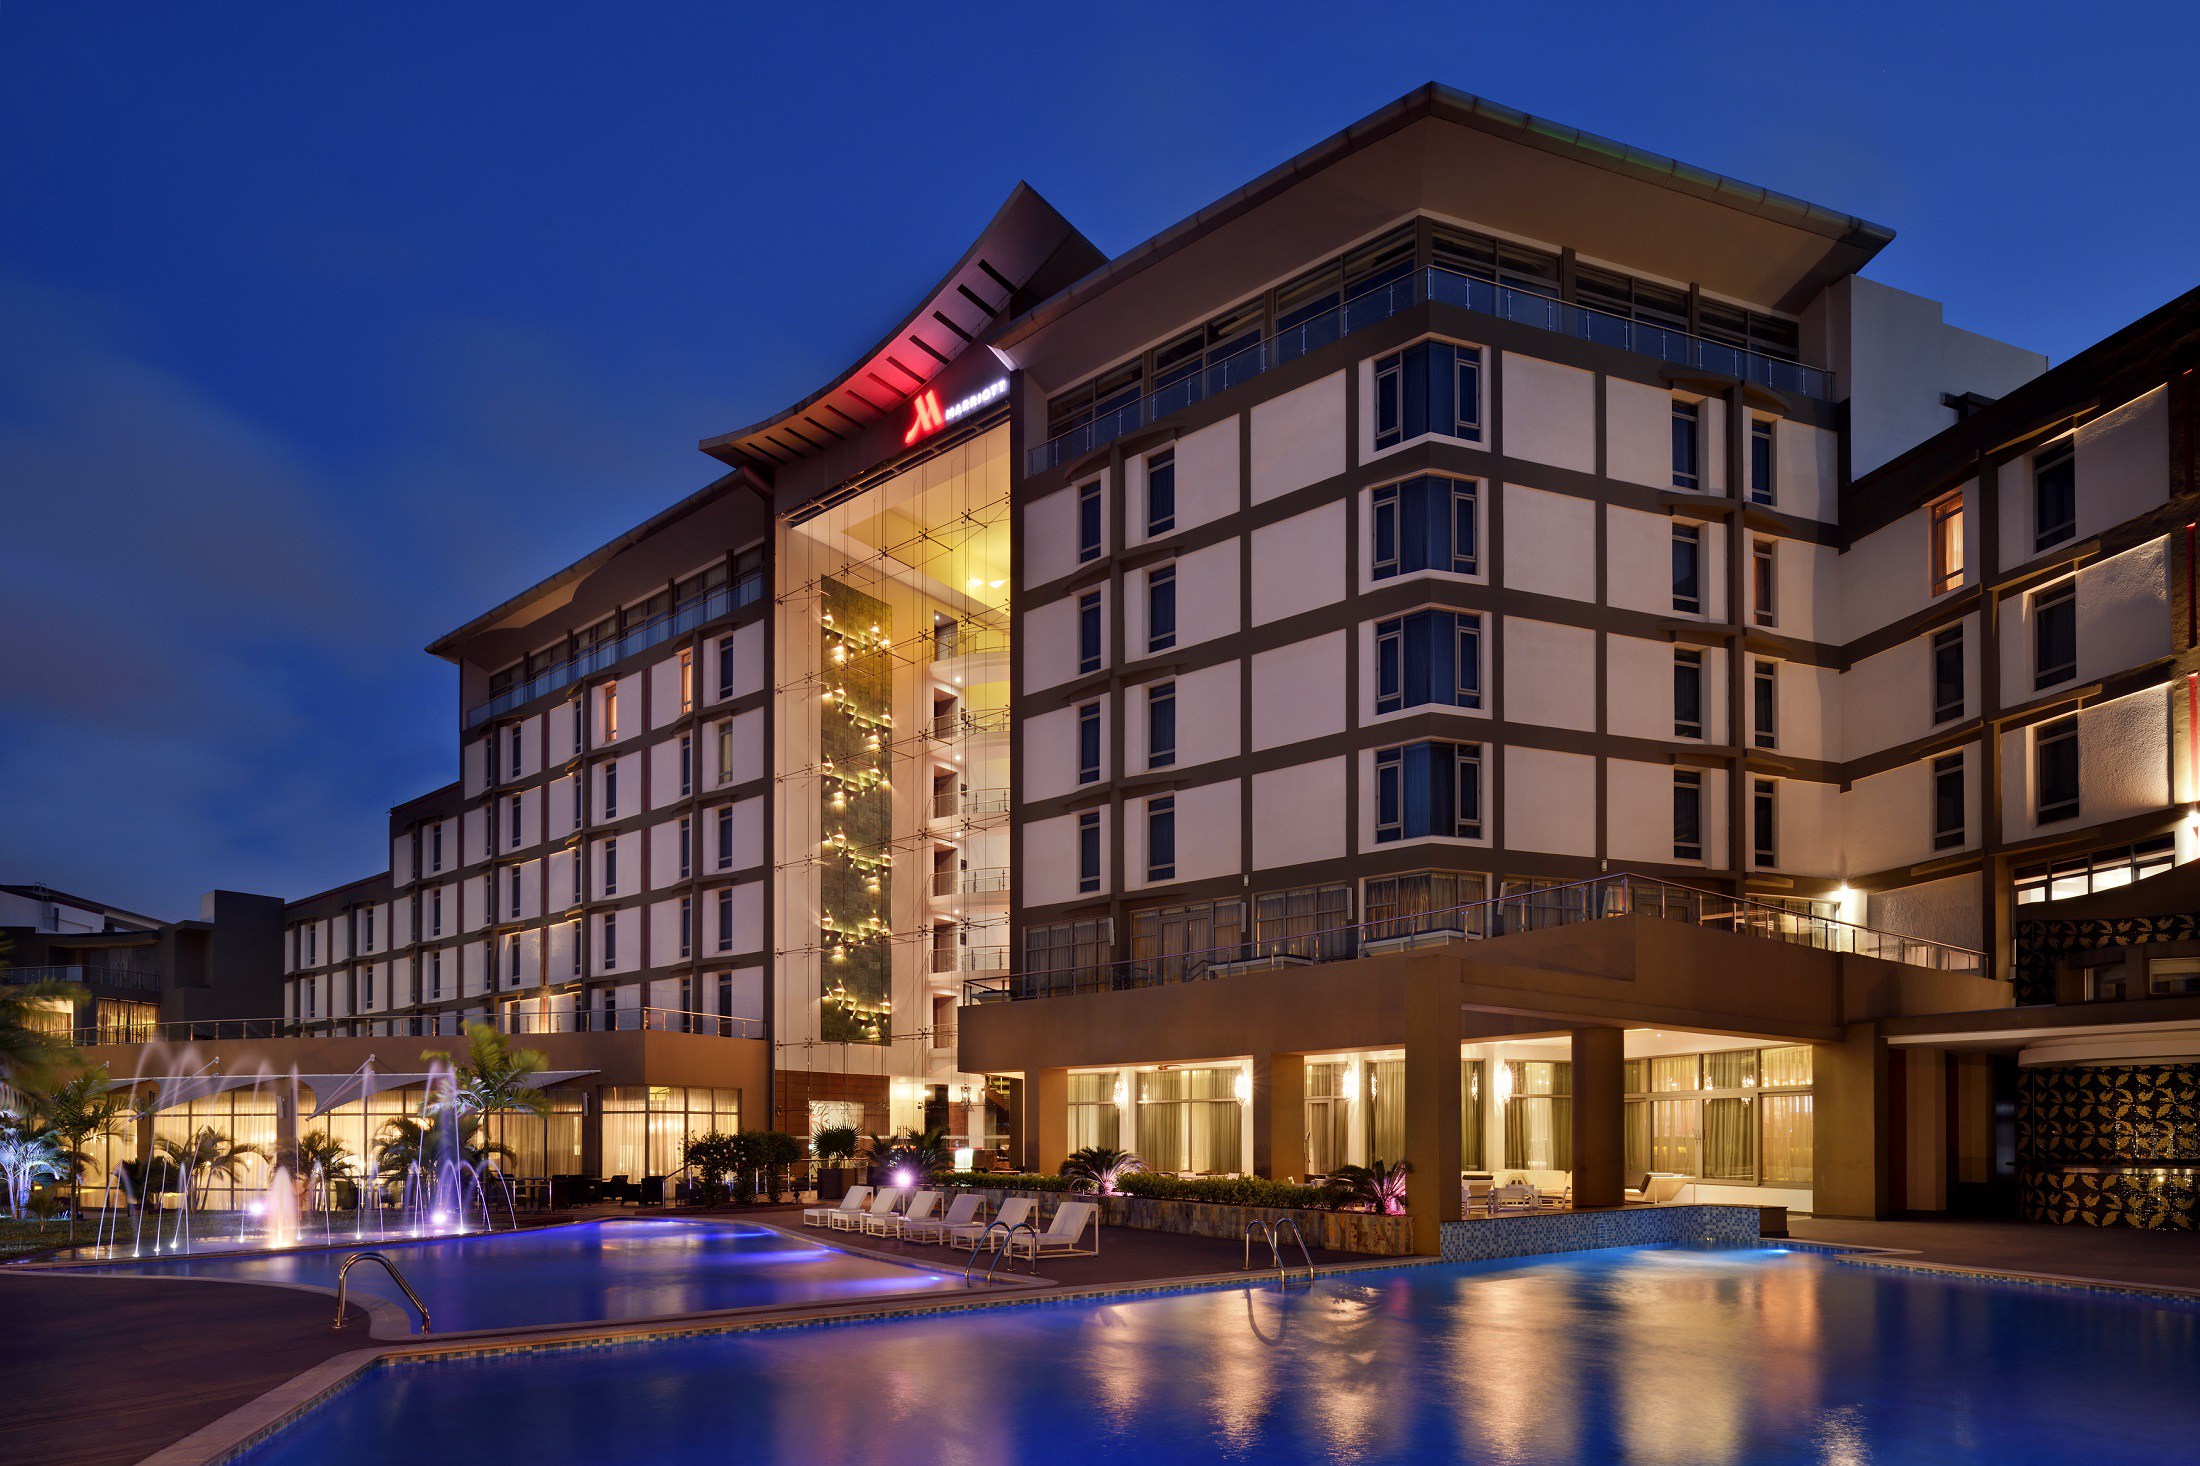 Marriott Hotels opens in Accra, Ghana